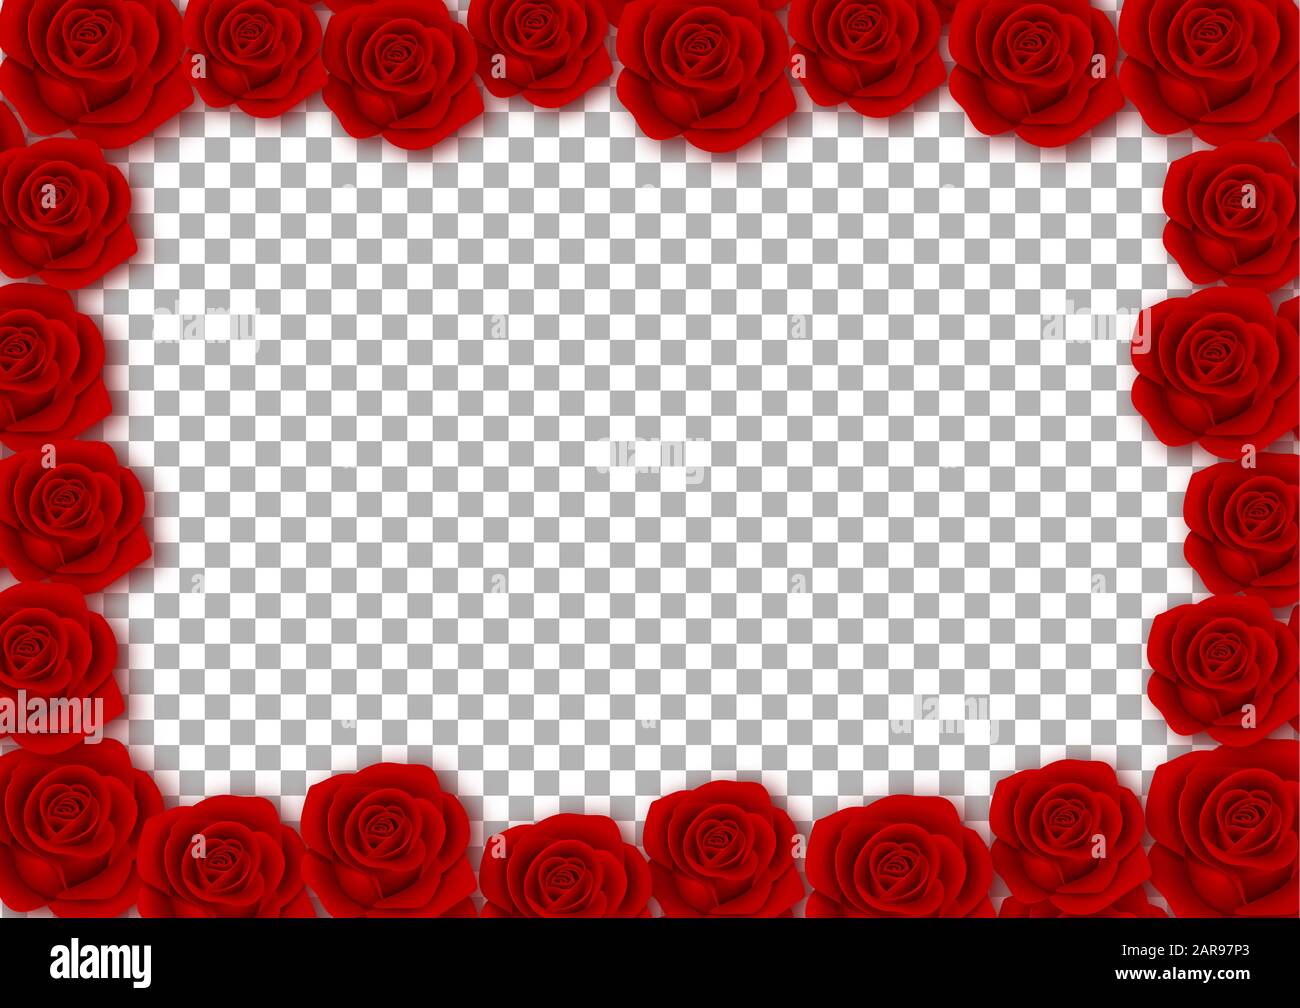 cadre de roses rouges pour la saint-valentin, fond de mariage Banque D'Images